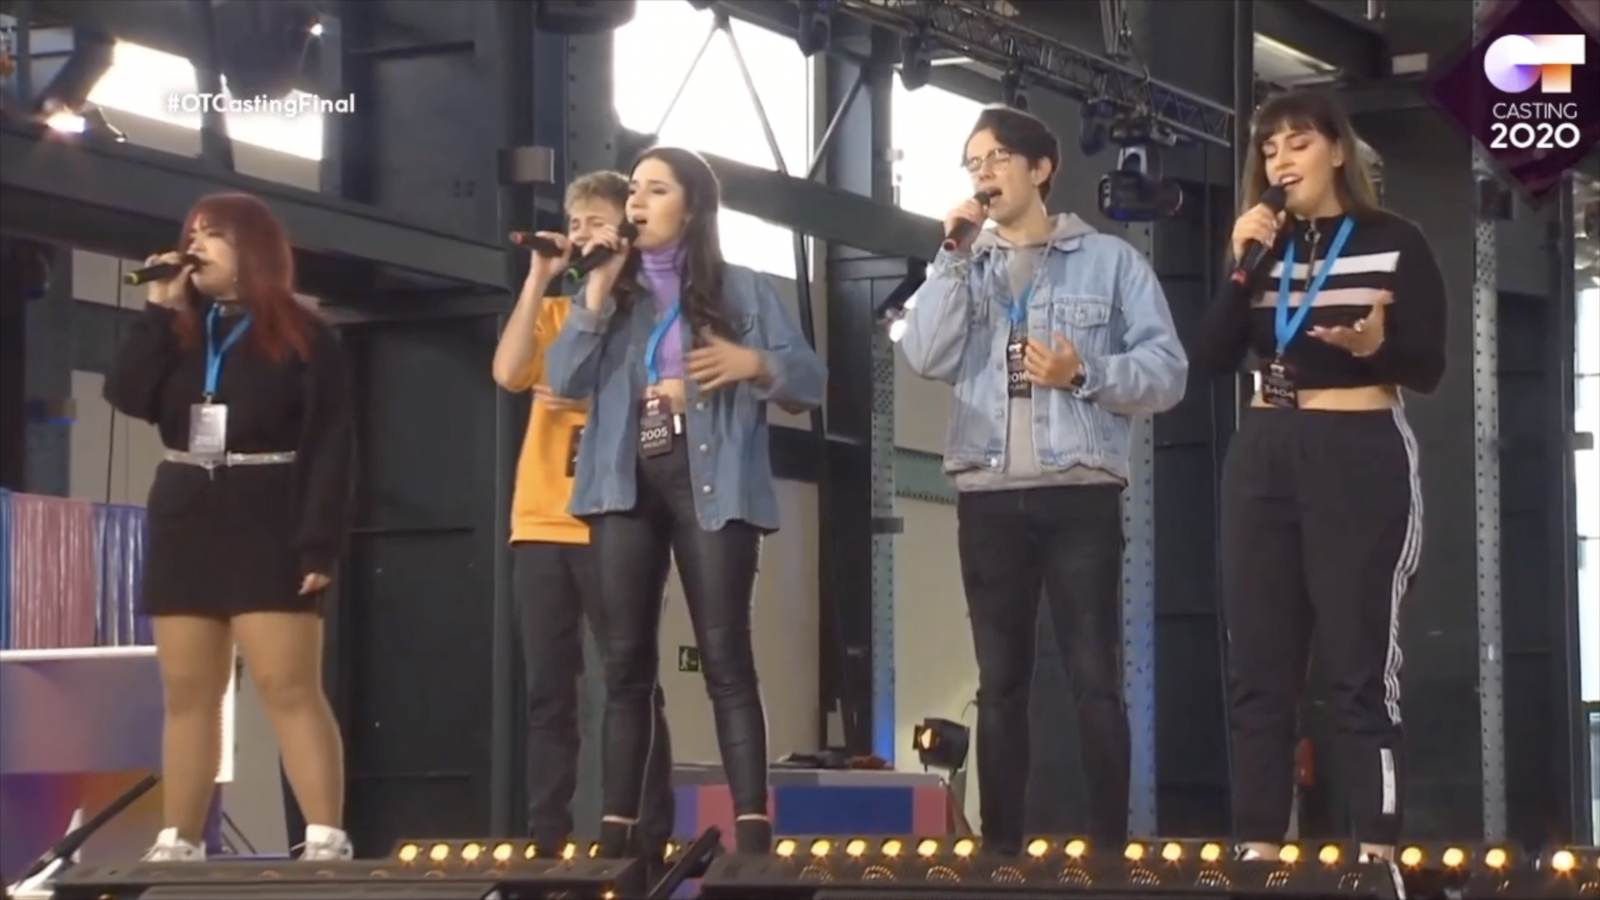 Hugo, Flavio, Ariadna, Alba y Ángeles interpretan "Pienso en tu mirá" en el casting final de OT 2020